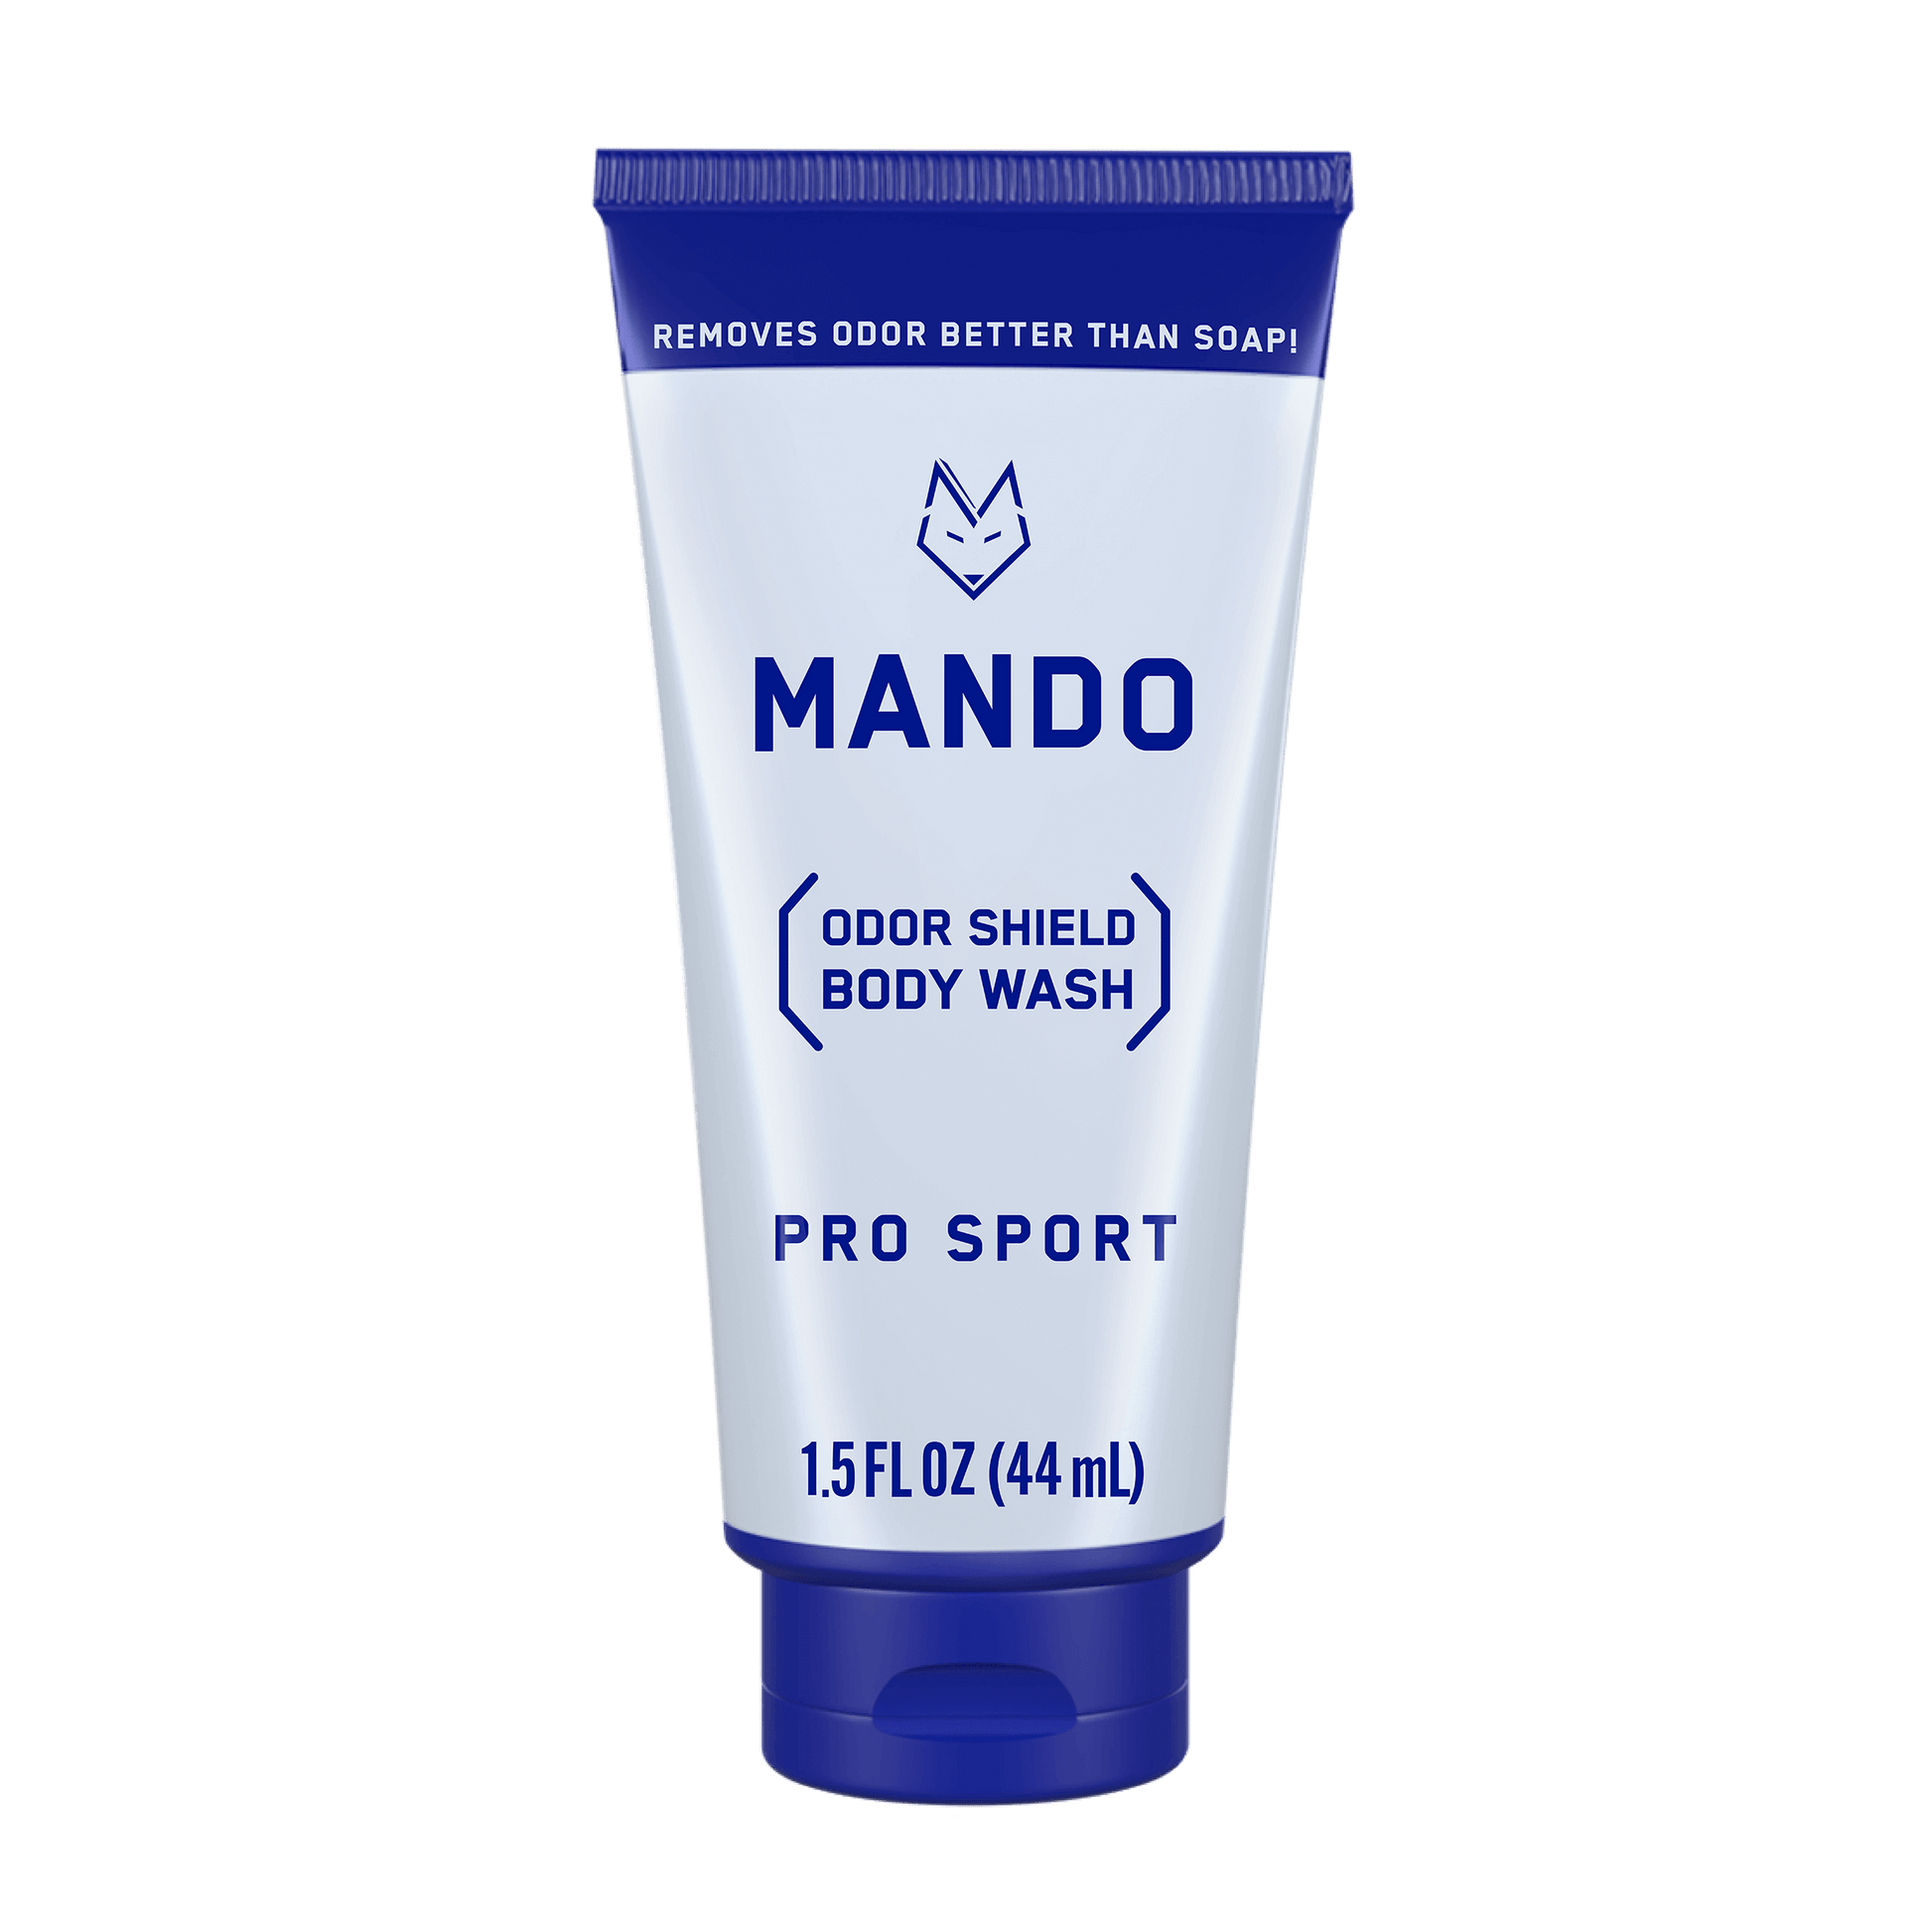 Mando mini body wash in pro sport scent